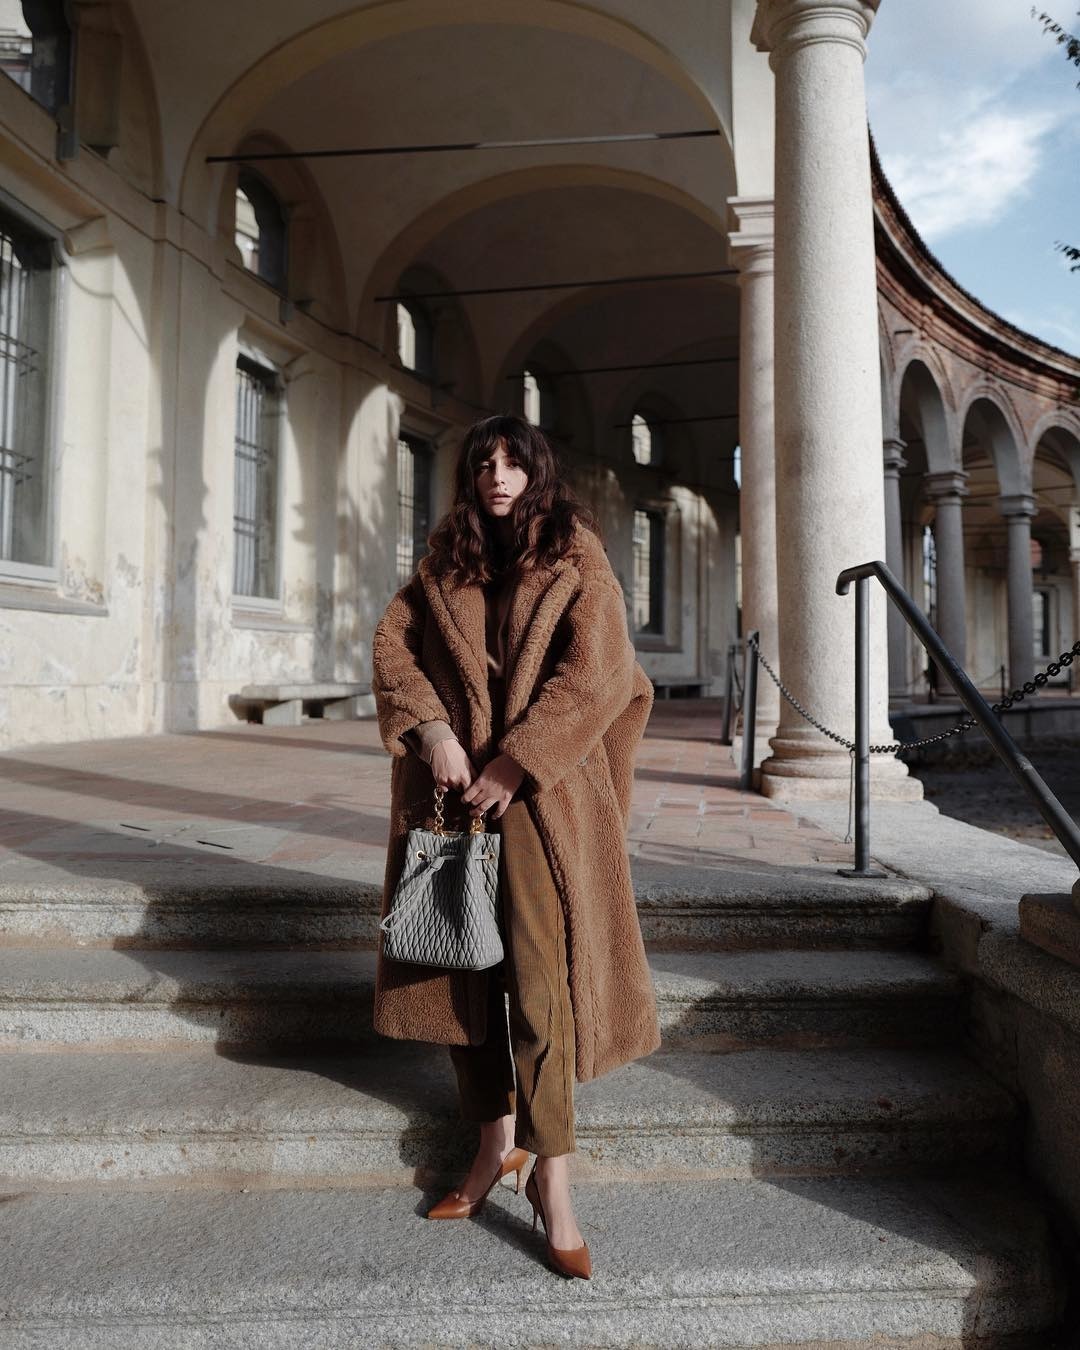 Alex Carl'dan Beatrice Gutu'ya Haftanın En İyi Moda Instagramları